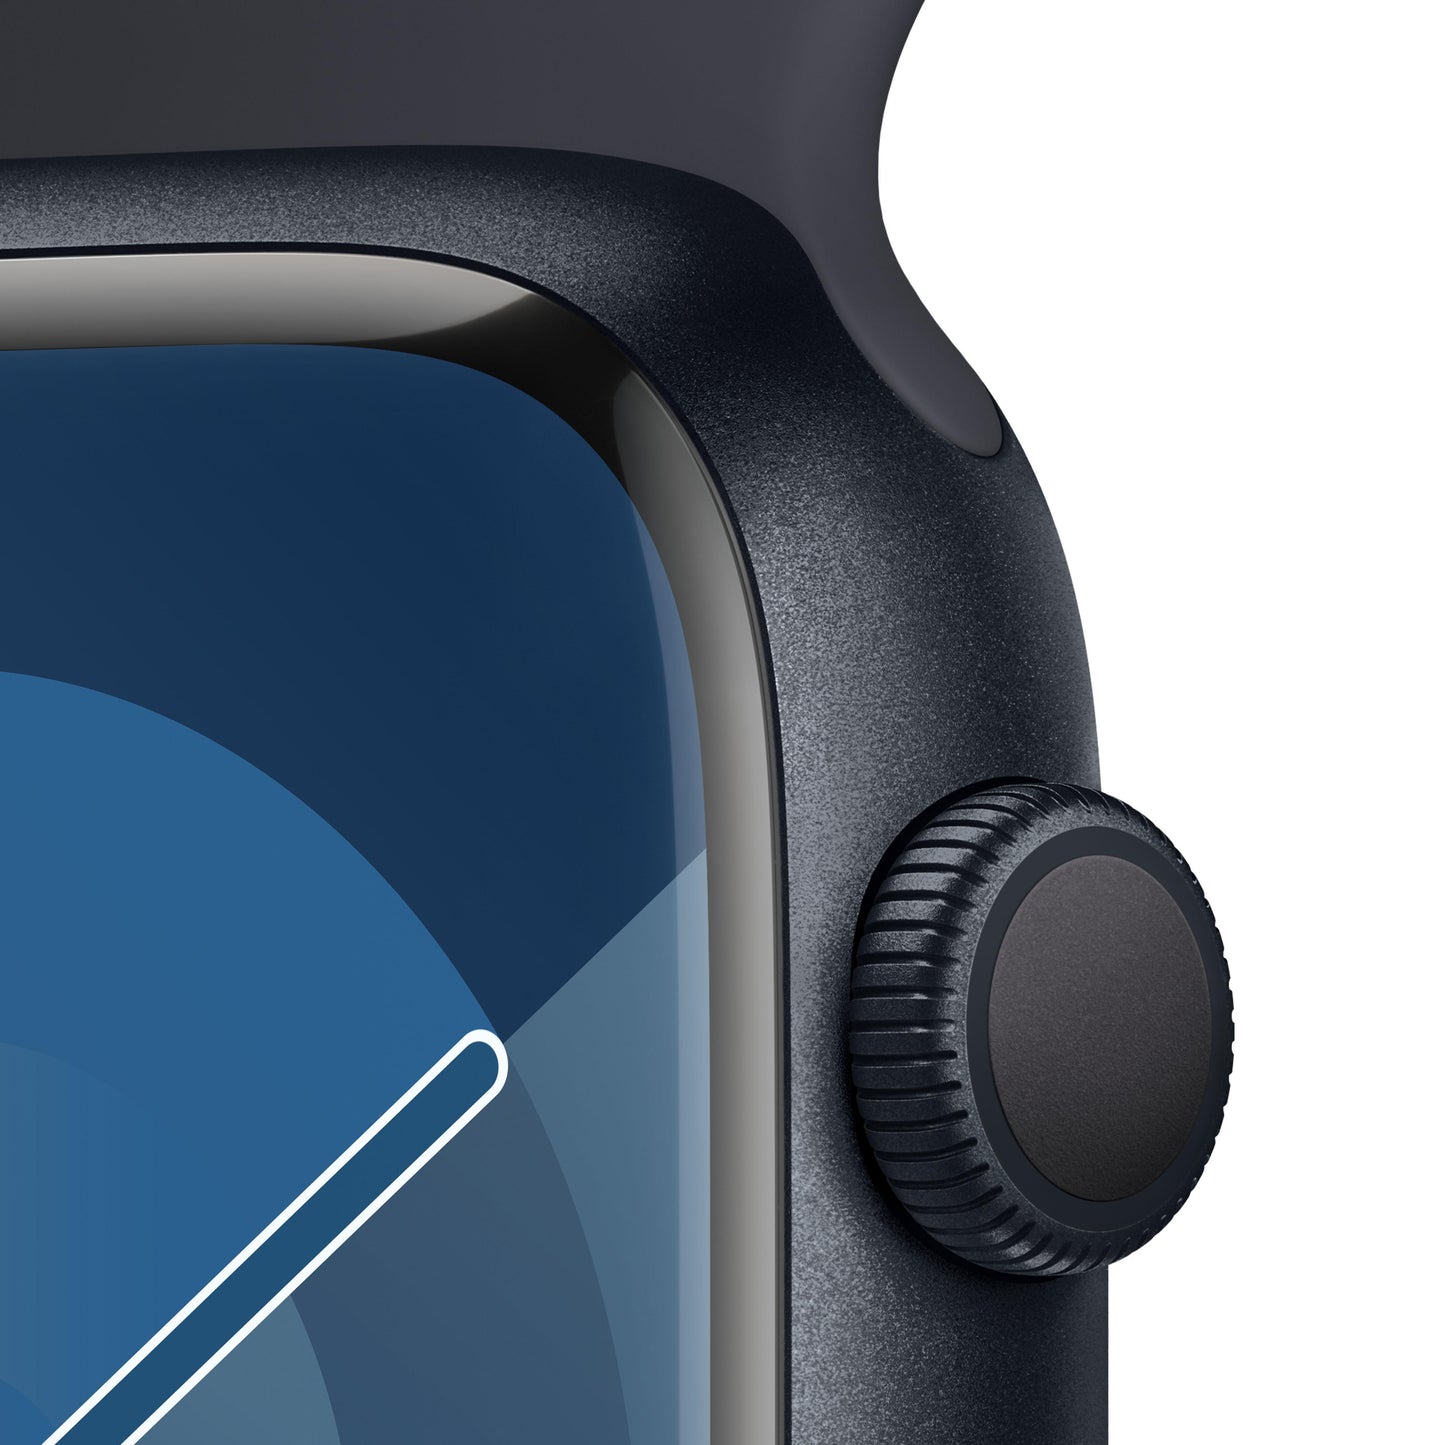 Apple Watch Series 9 (GPS) - Caja de aluminio en color medianoche de 45 mm - Correa deportiva color medianoche - Talla S/M